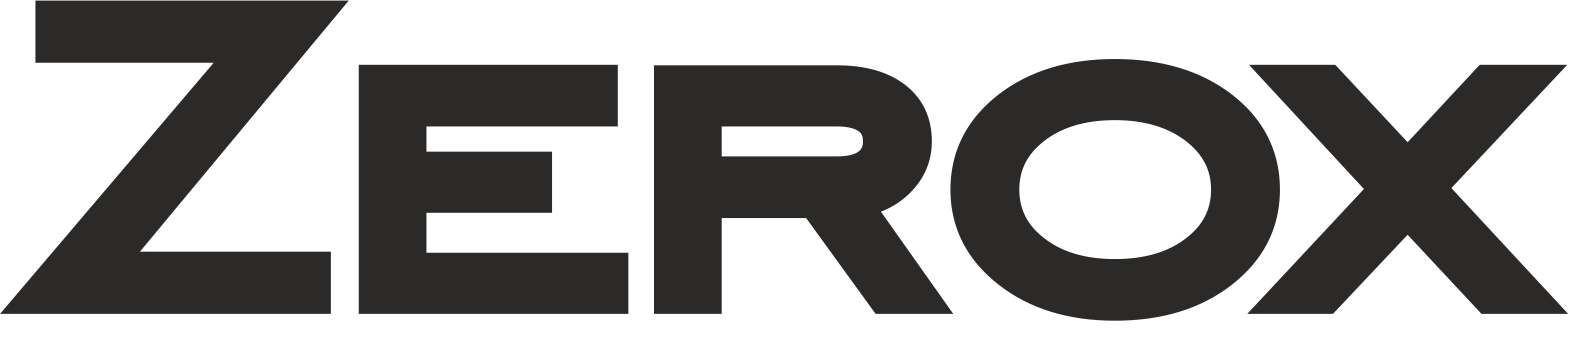 logo-zerox